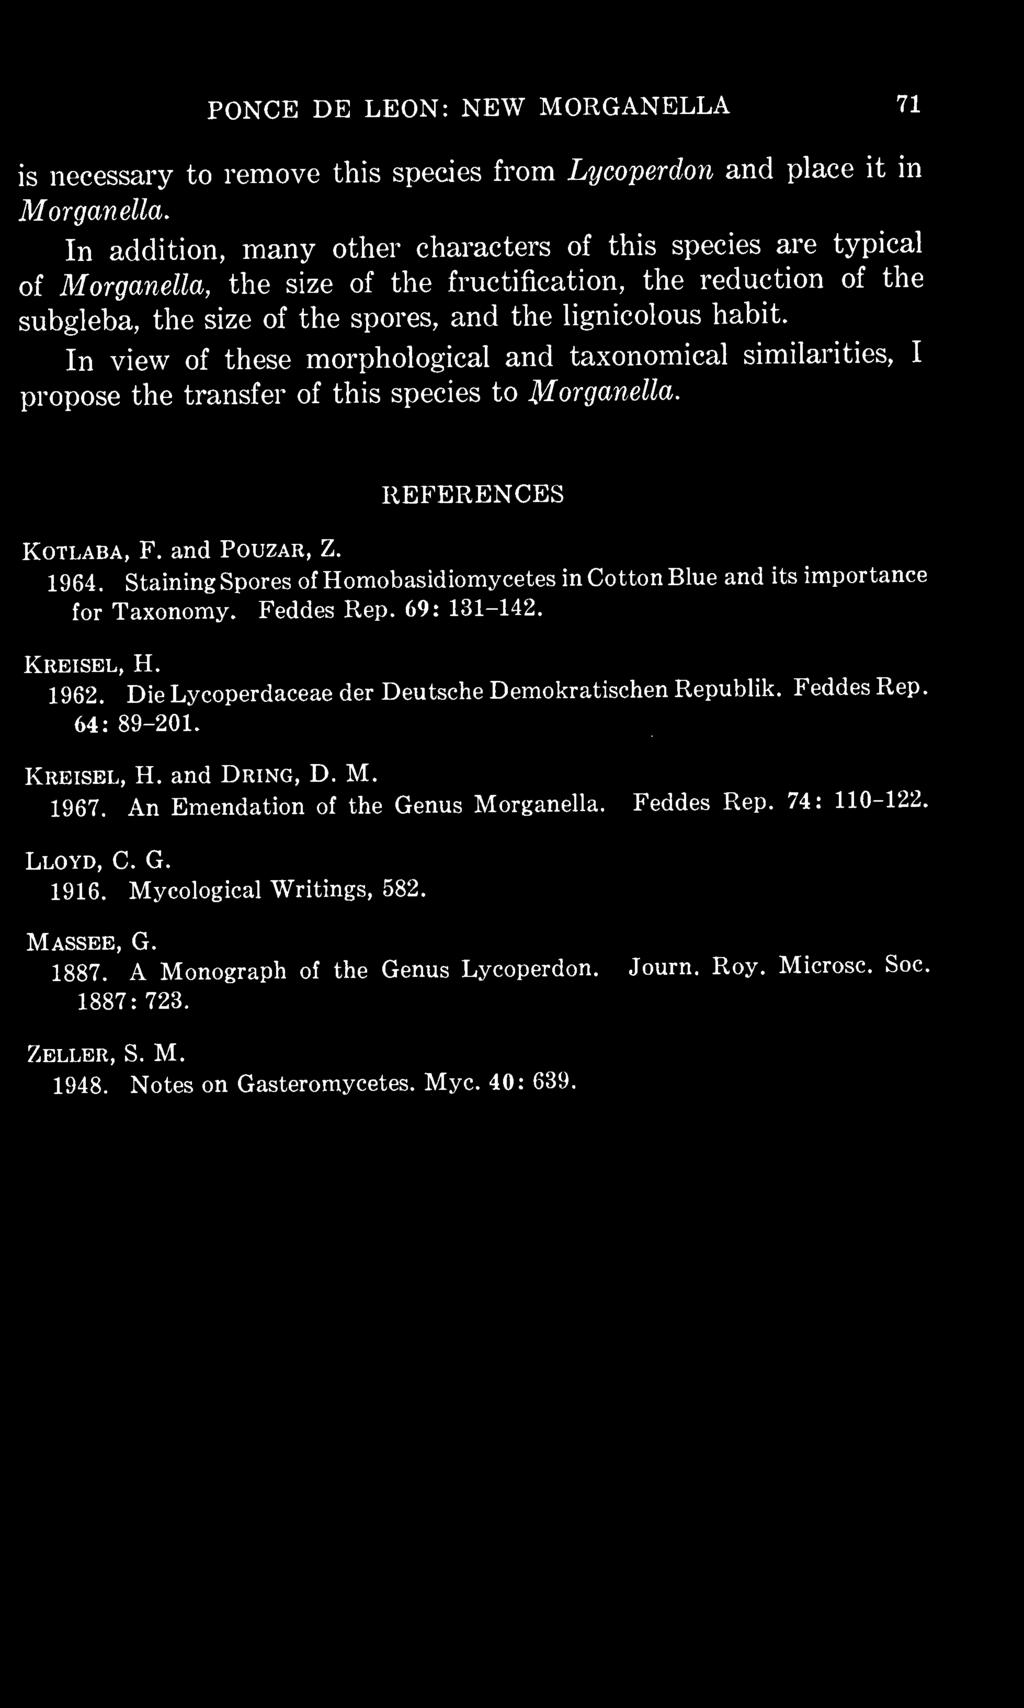 KREISEL, H. 1962. Die Lycoperdaceae der Deutsche Demokratischen Republik. Feddes Rep. 64: 89-201. KREISEL, H. and DRING, D. M. 1967.